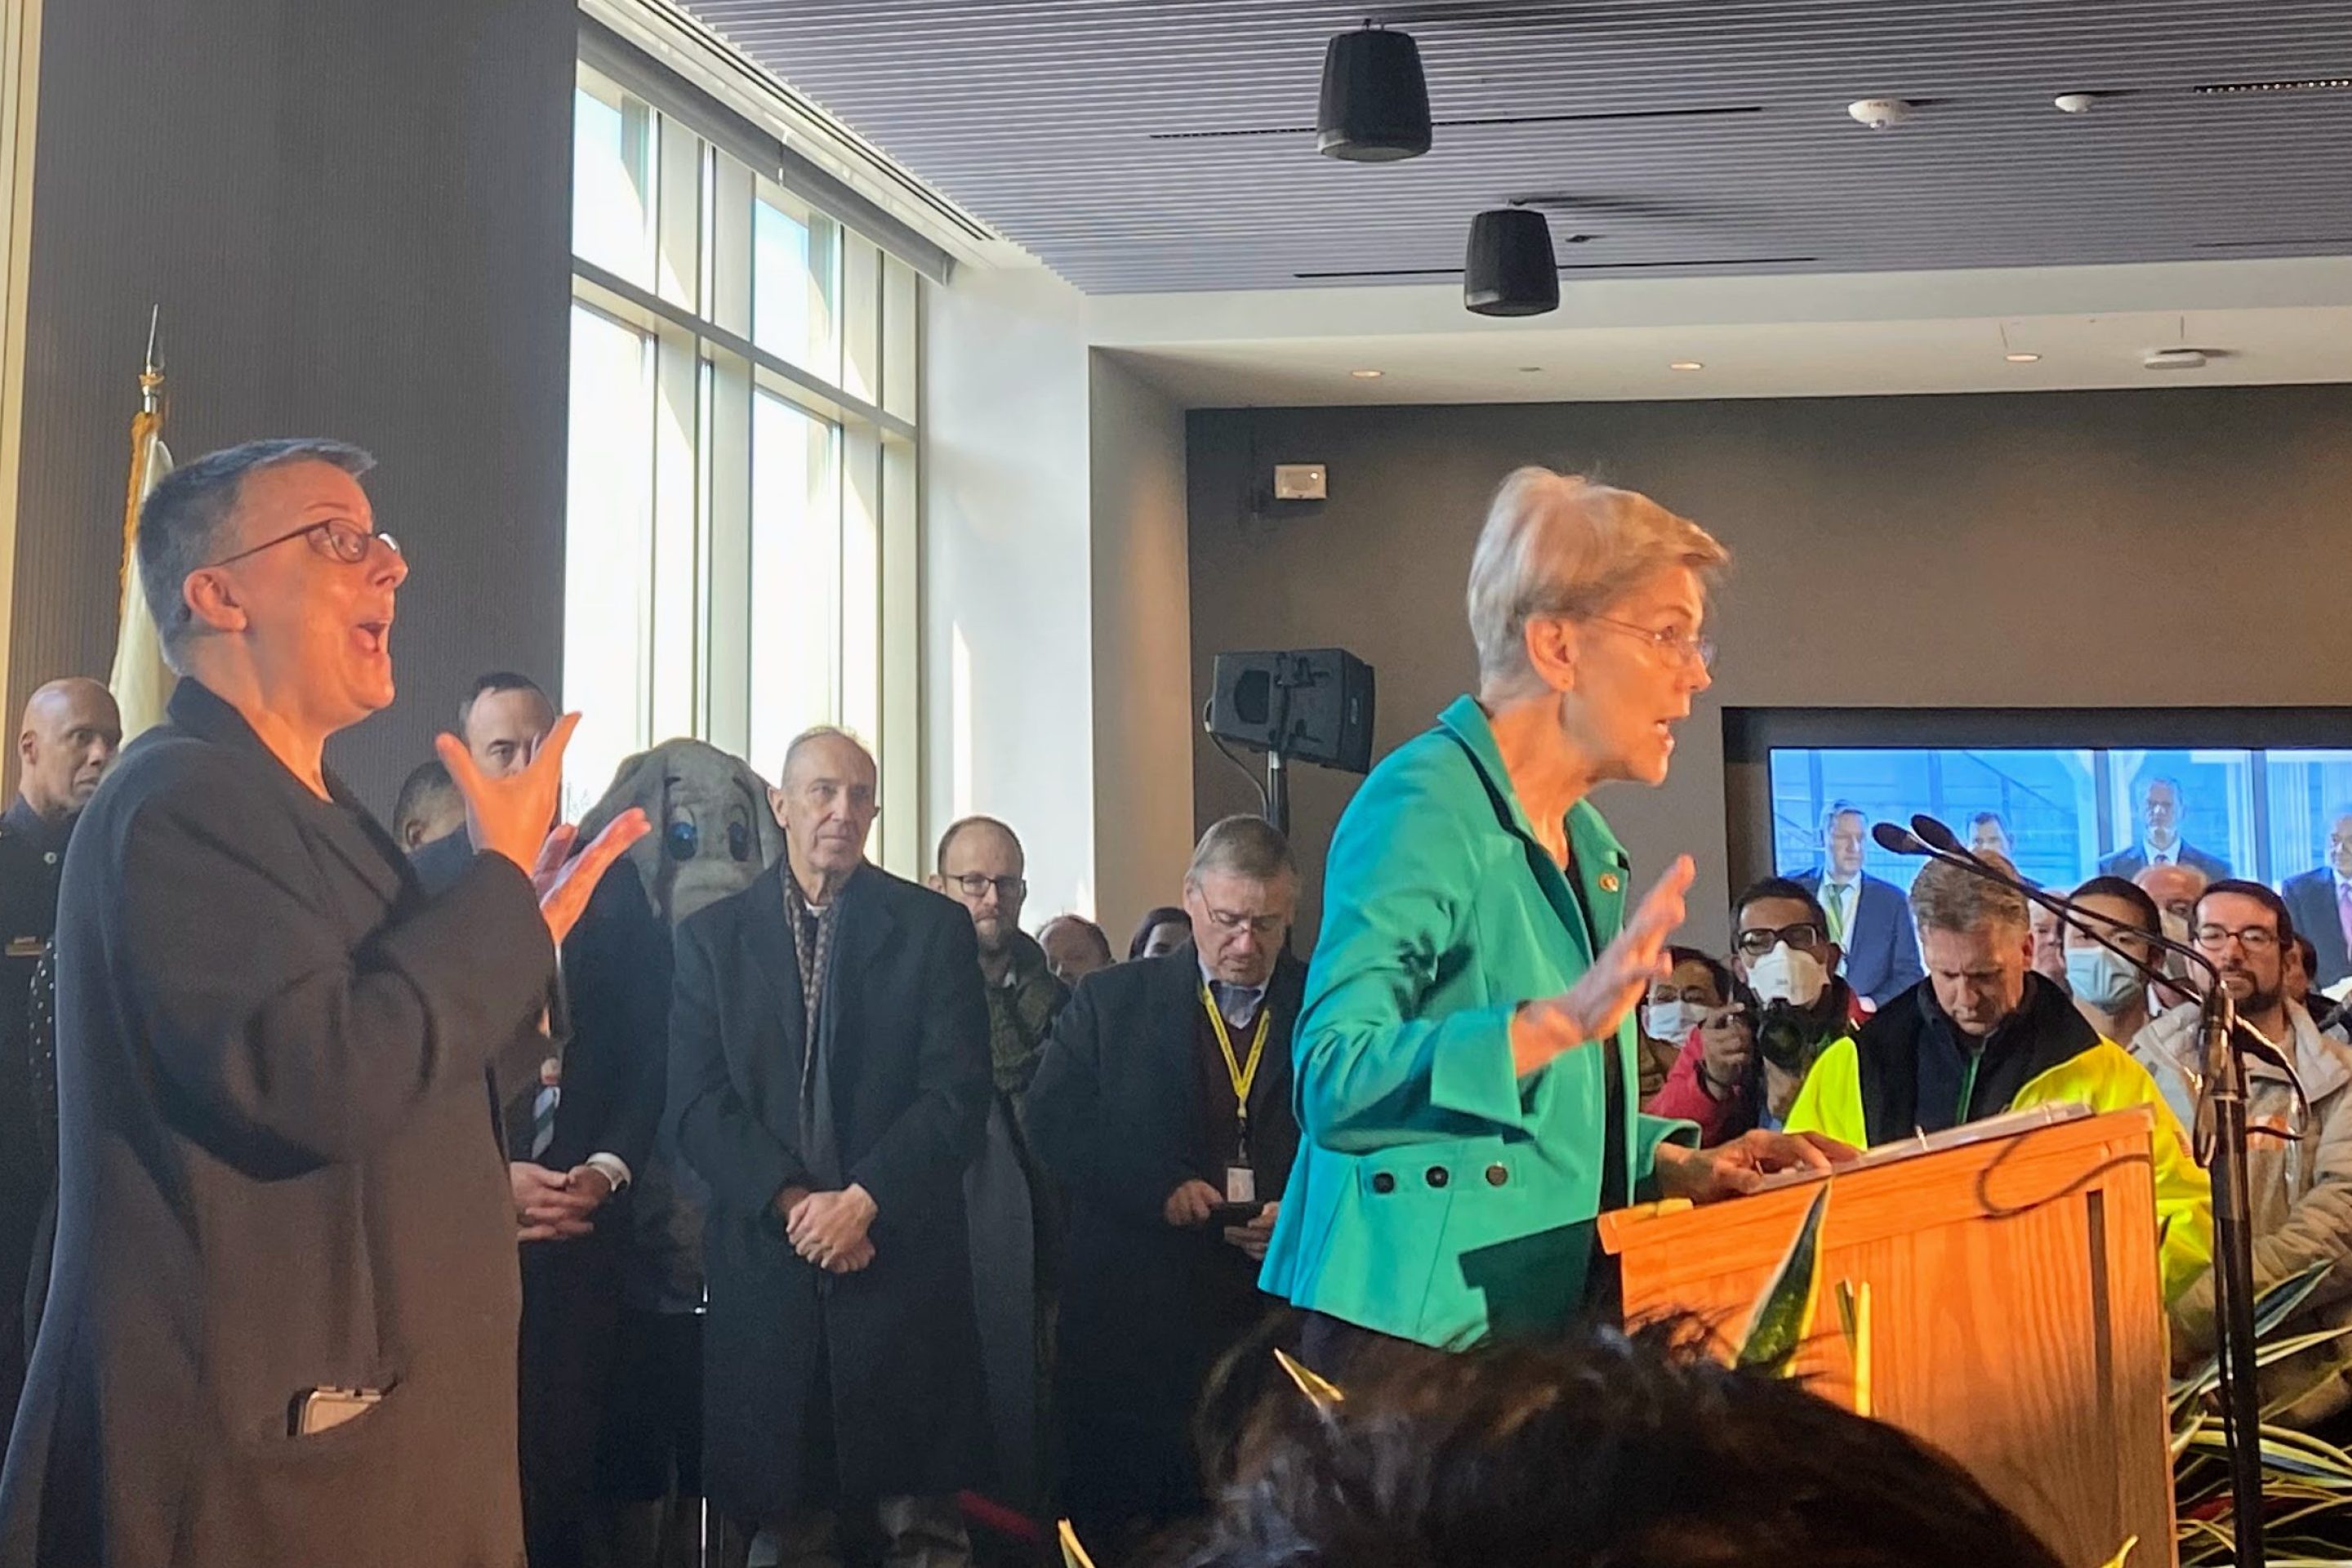 Senator Elizabeth Warren speaks to a large crowd at Tufts University. Governor Charlie Baker, Senator Ed Markey, among others, stand behind her.